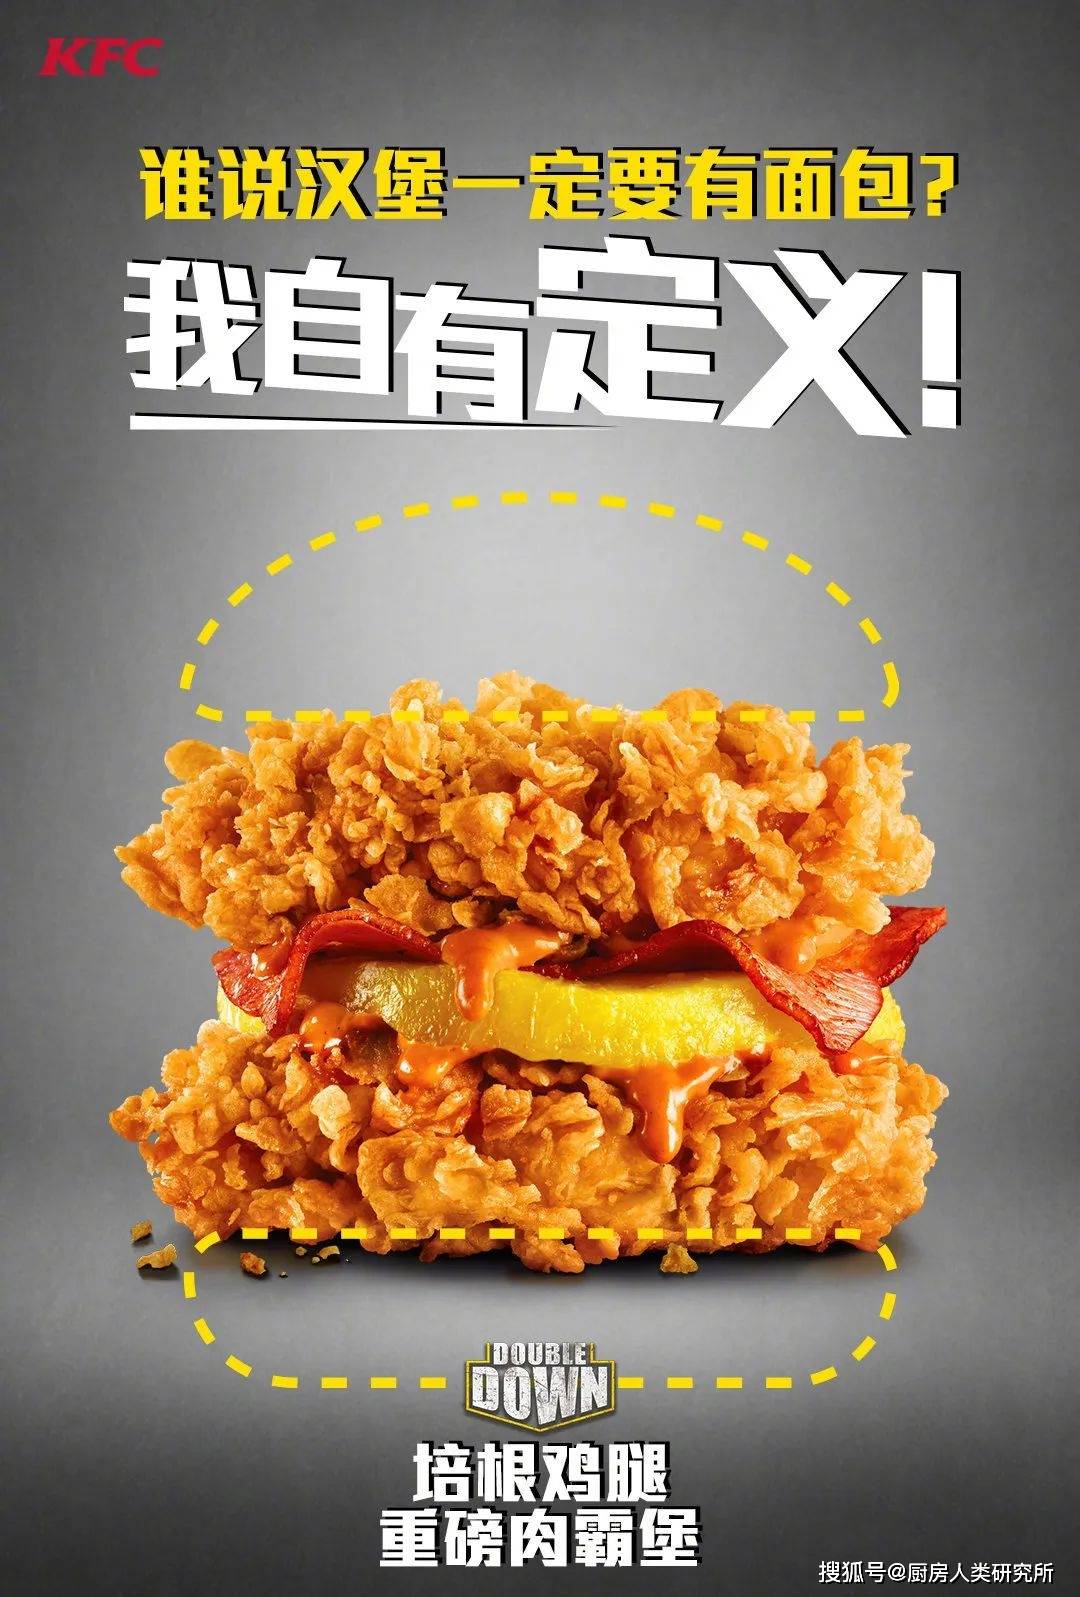 神奇联动：吃KFC炸鸡“汉堡”获《暗黑4》测试资格